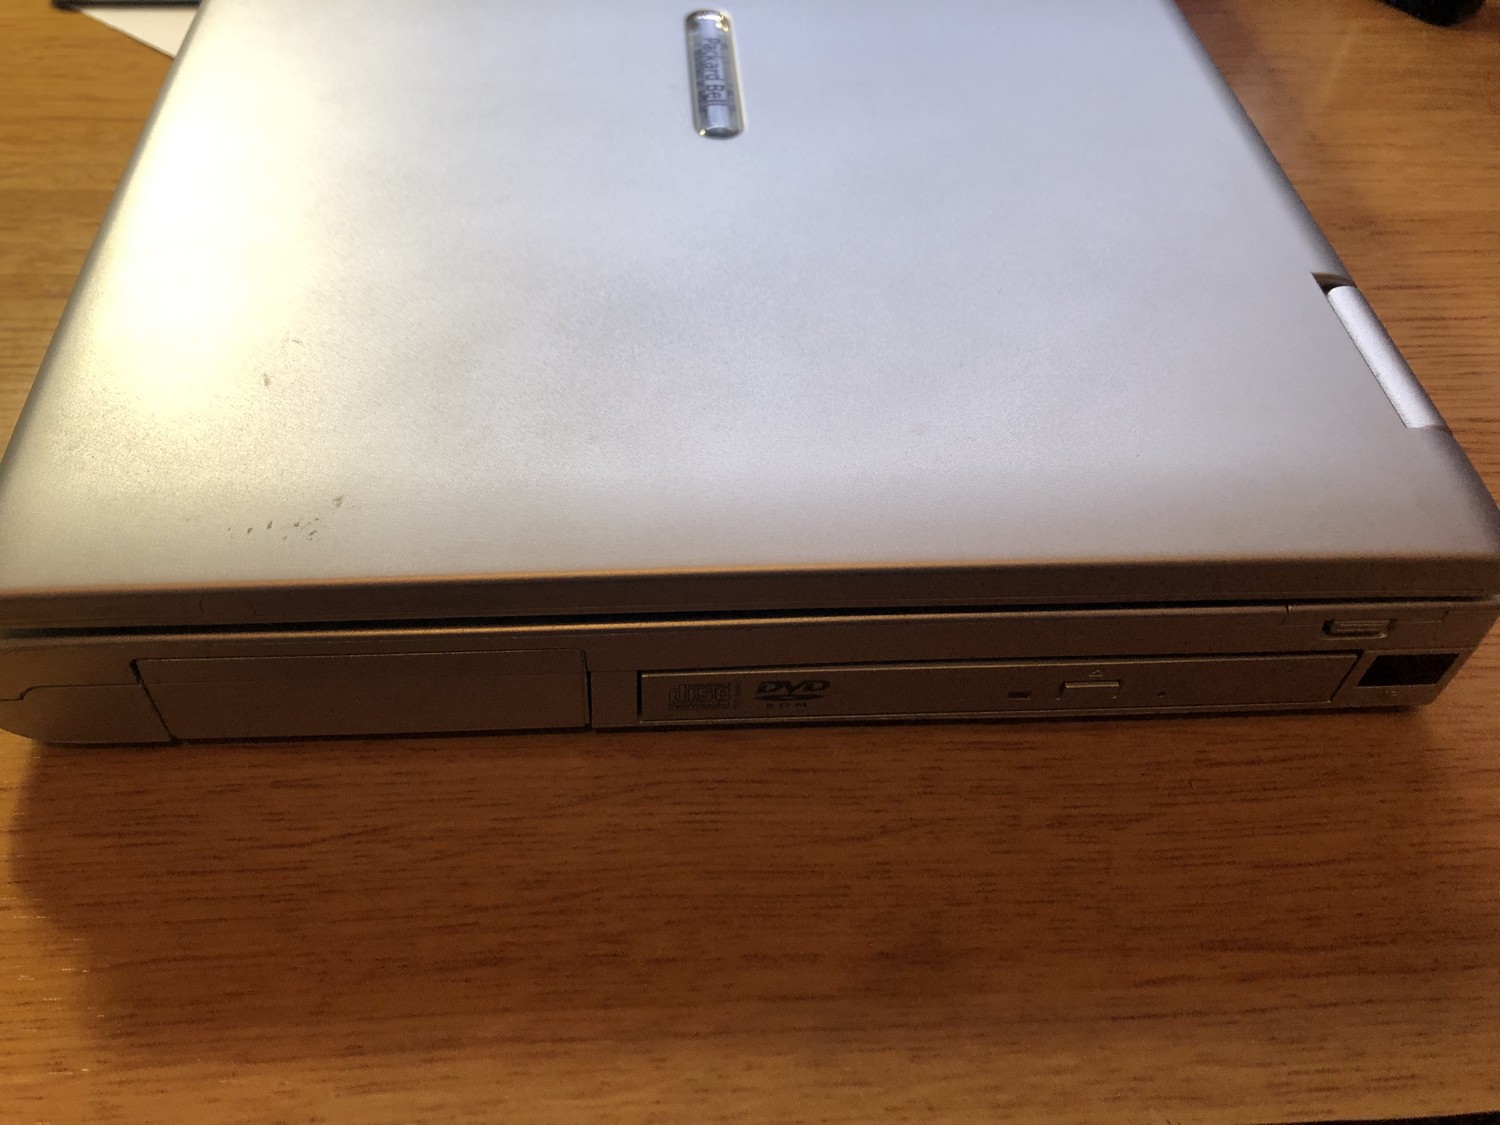 Гаджеты с барахолки: зачем покупать 20-летний ноутбук Packard Bell за 10 евро - 6